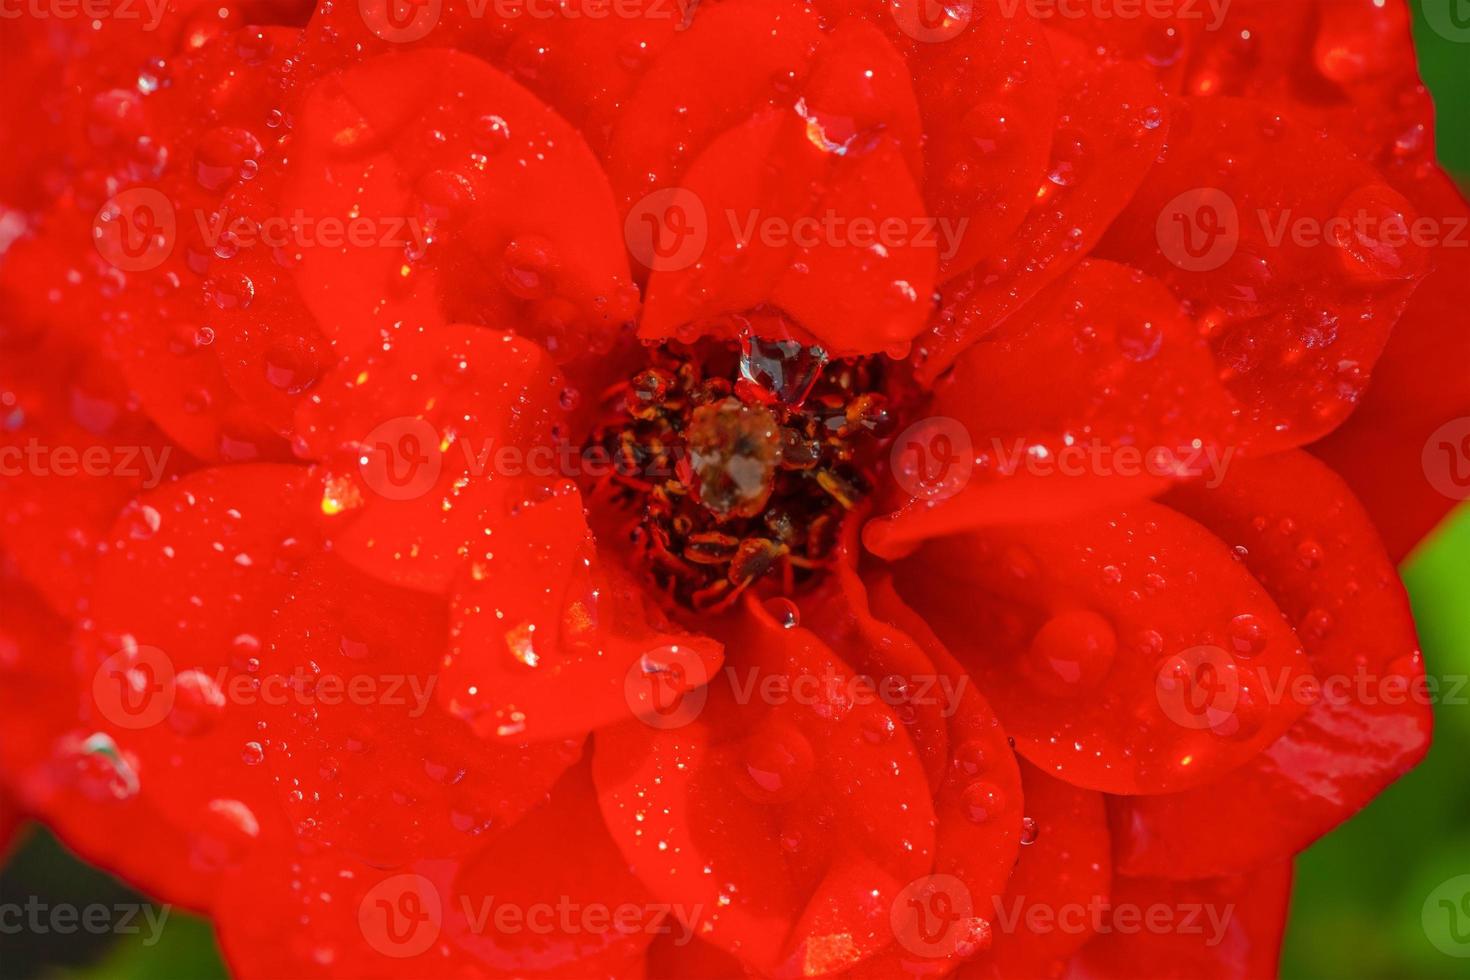 rosa rossa con gocce dopo la pioggia. foto a macroistruzione di un fiore con gocce di rugiada.